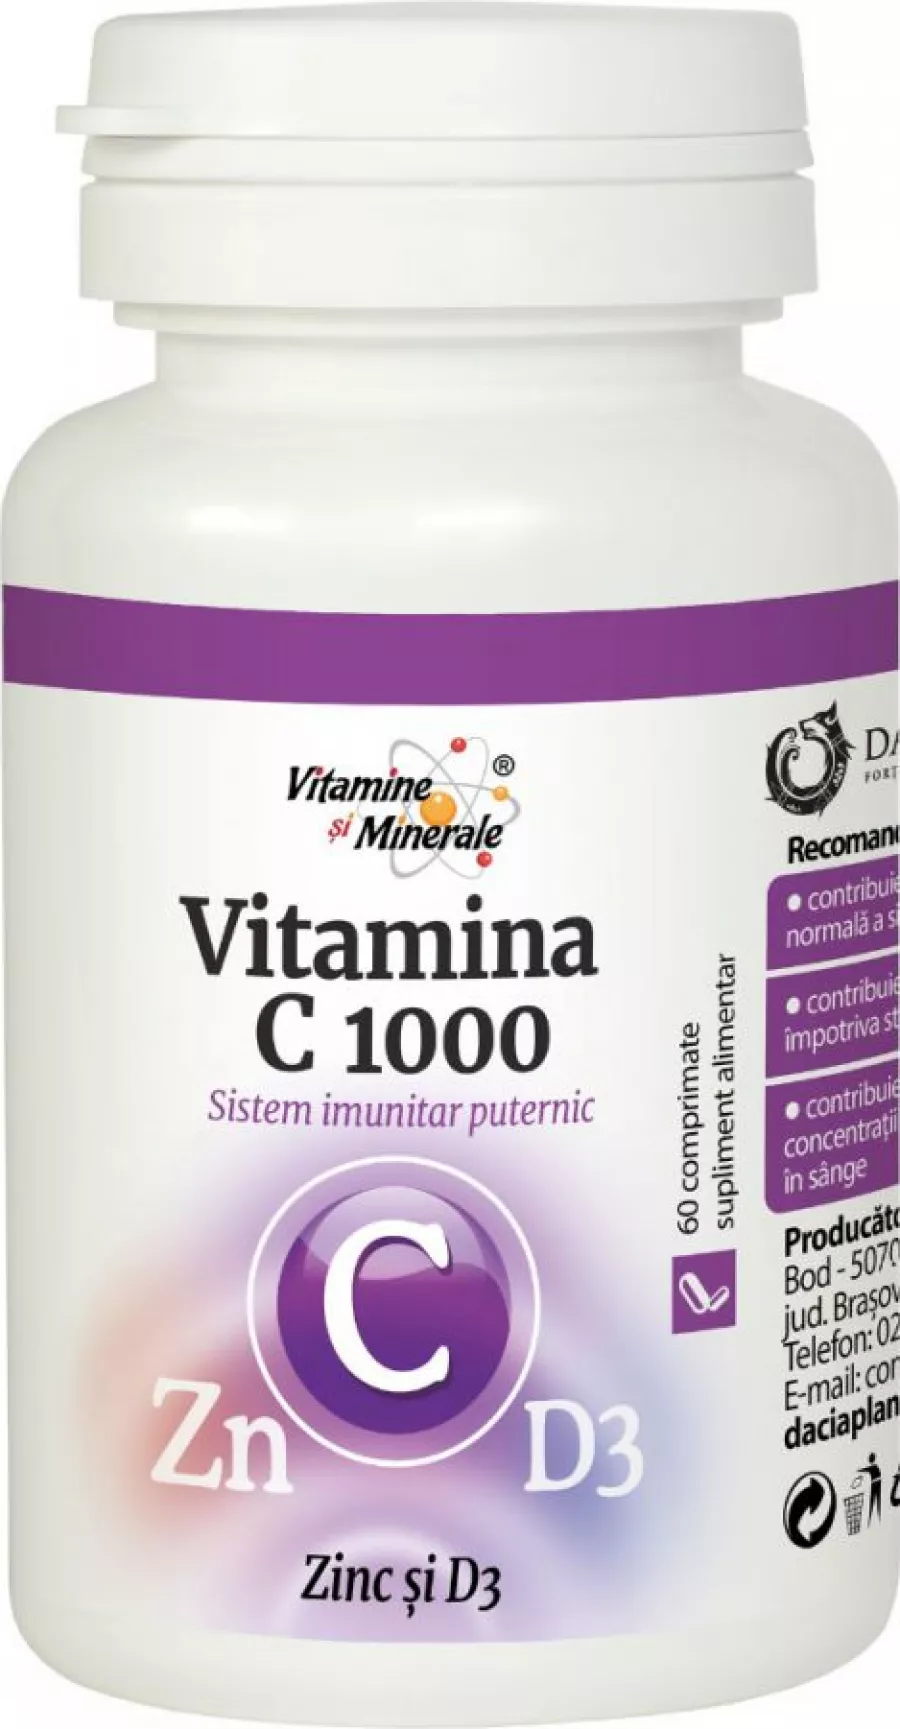 Vitamina C cu Zinc si D3 Dacia Plant - 60 Comprimate - Comanda Online de pe genunetwork.ro